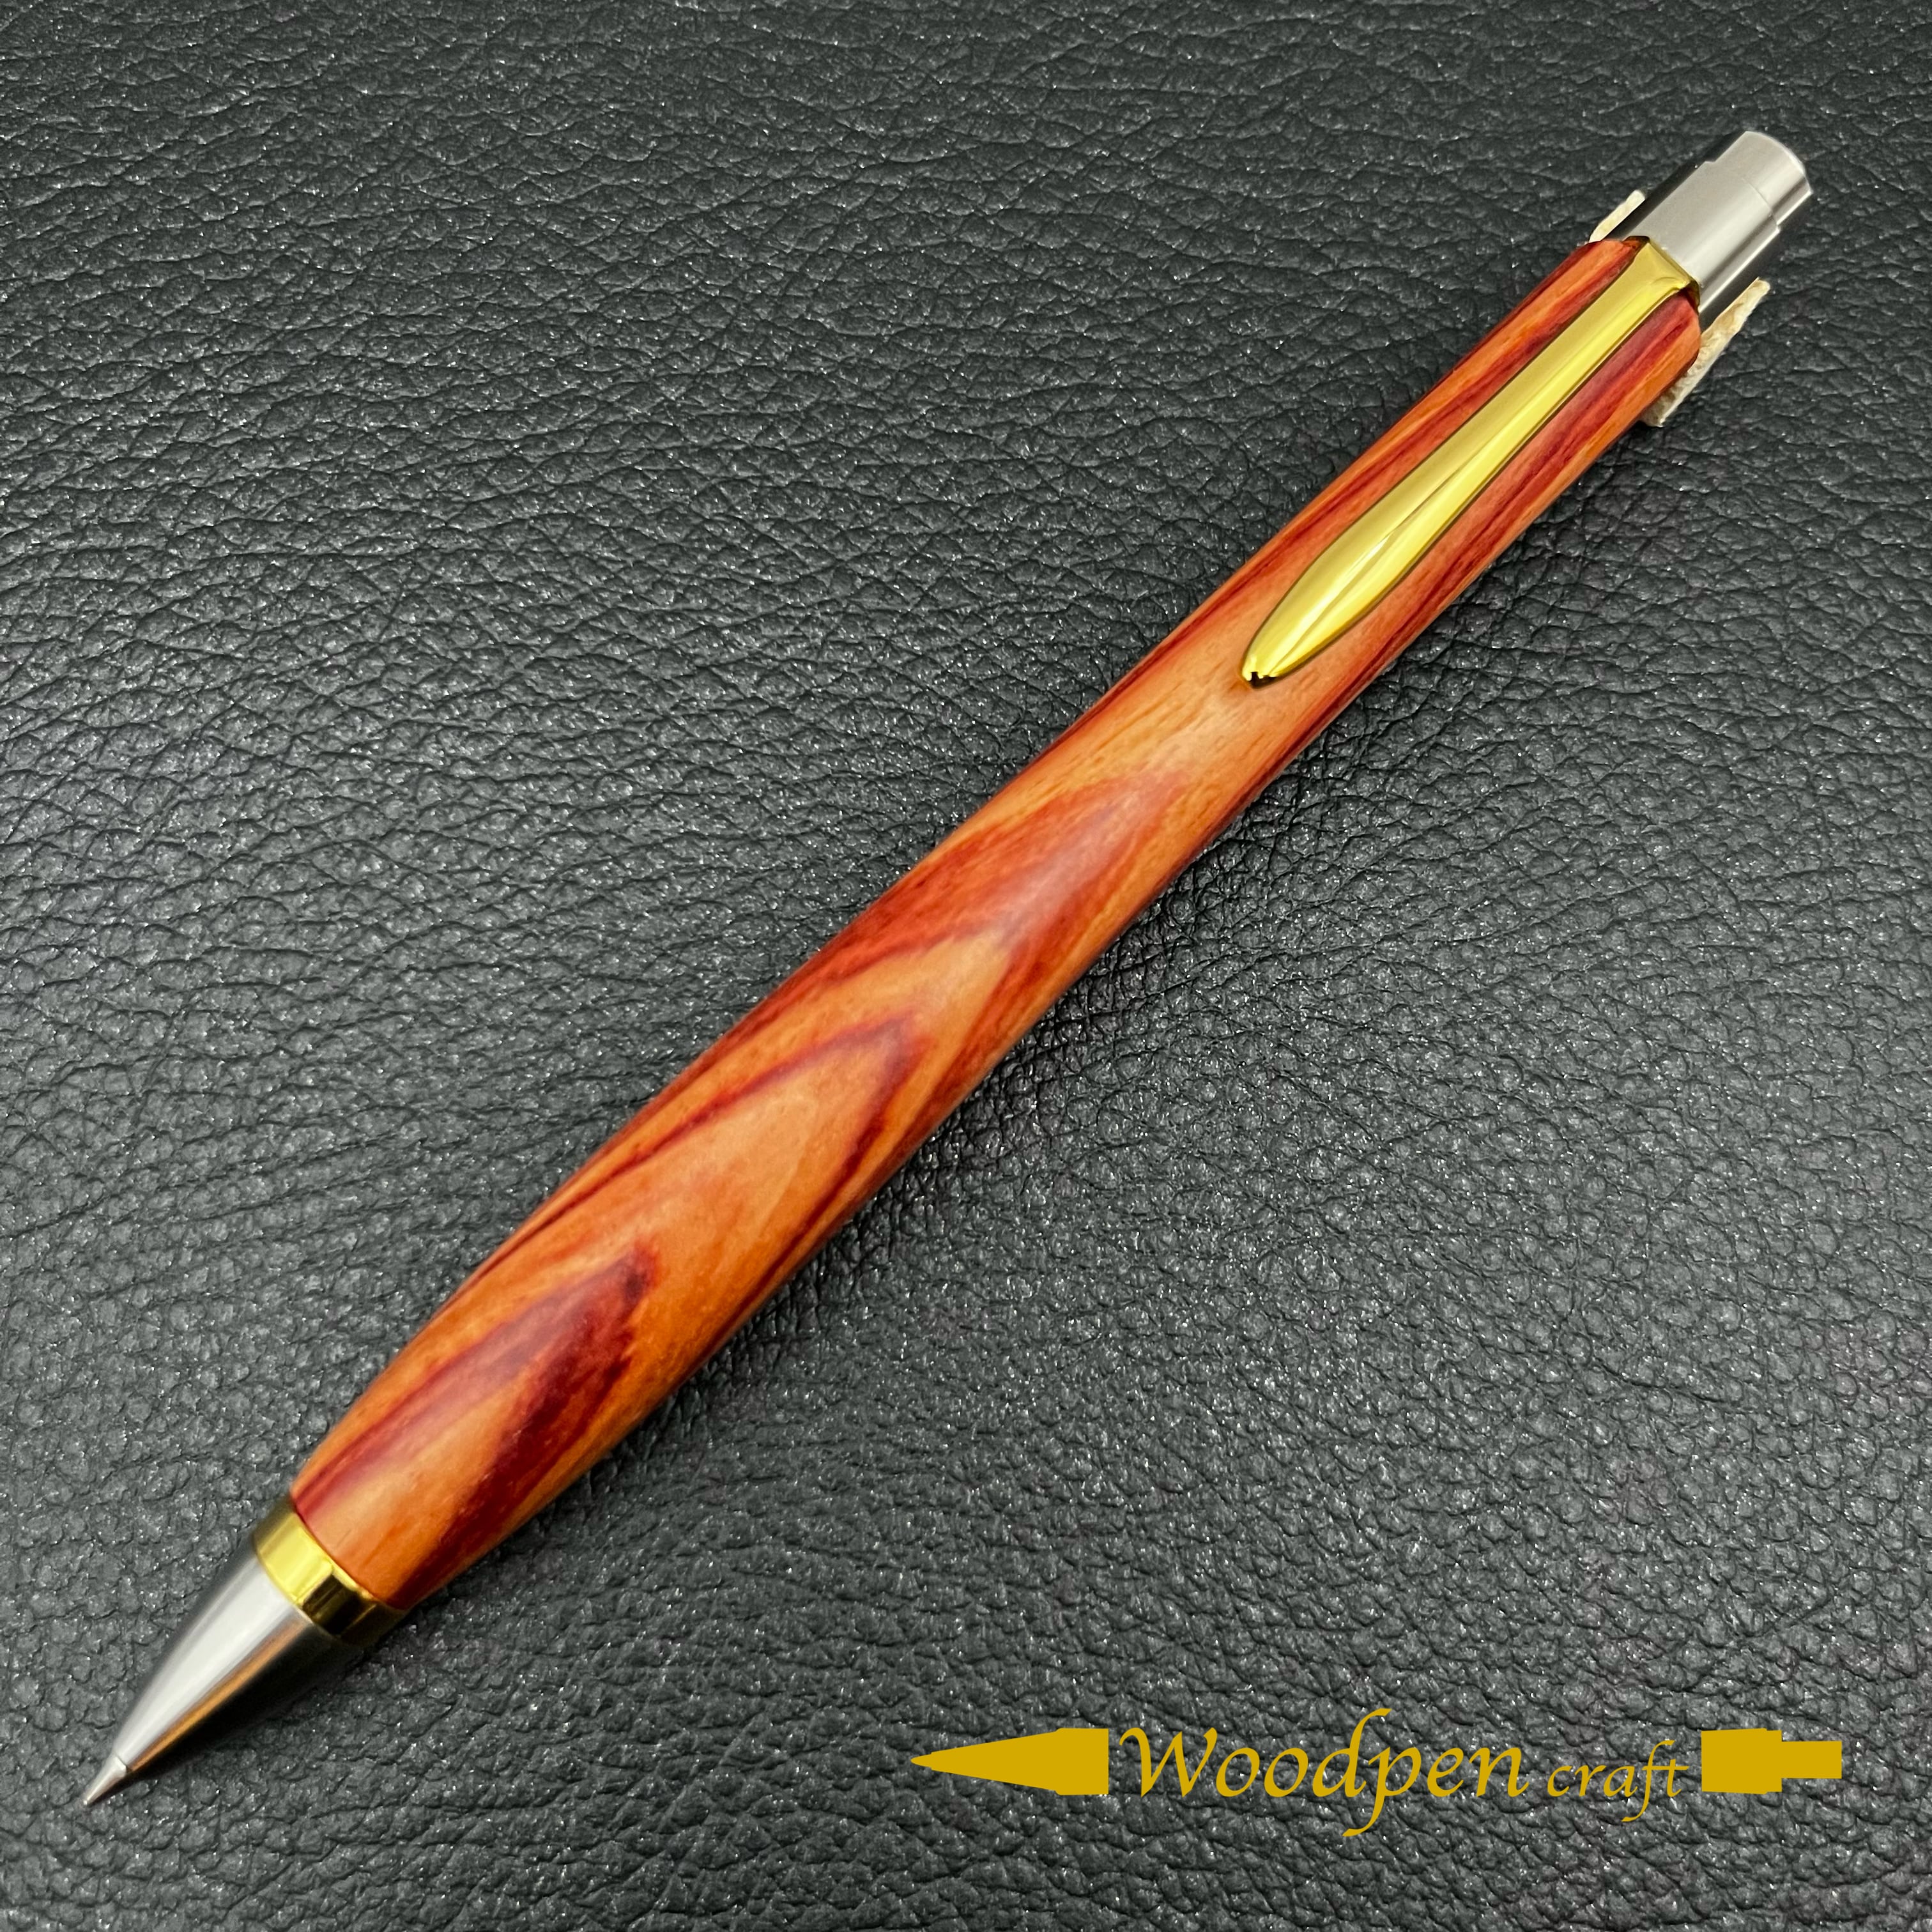 ウッドペンクラフト ボールペン - 筆記具